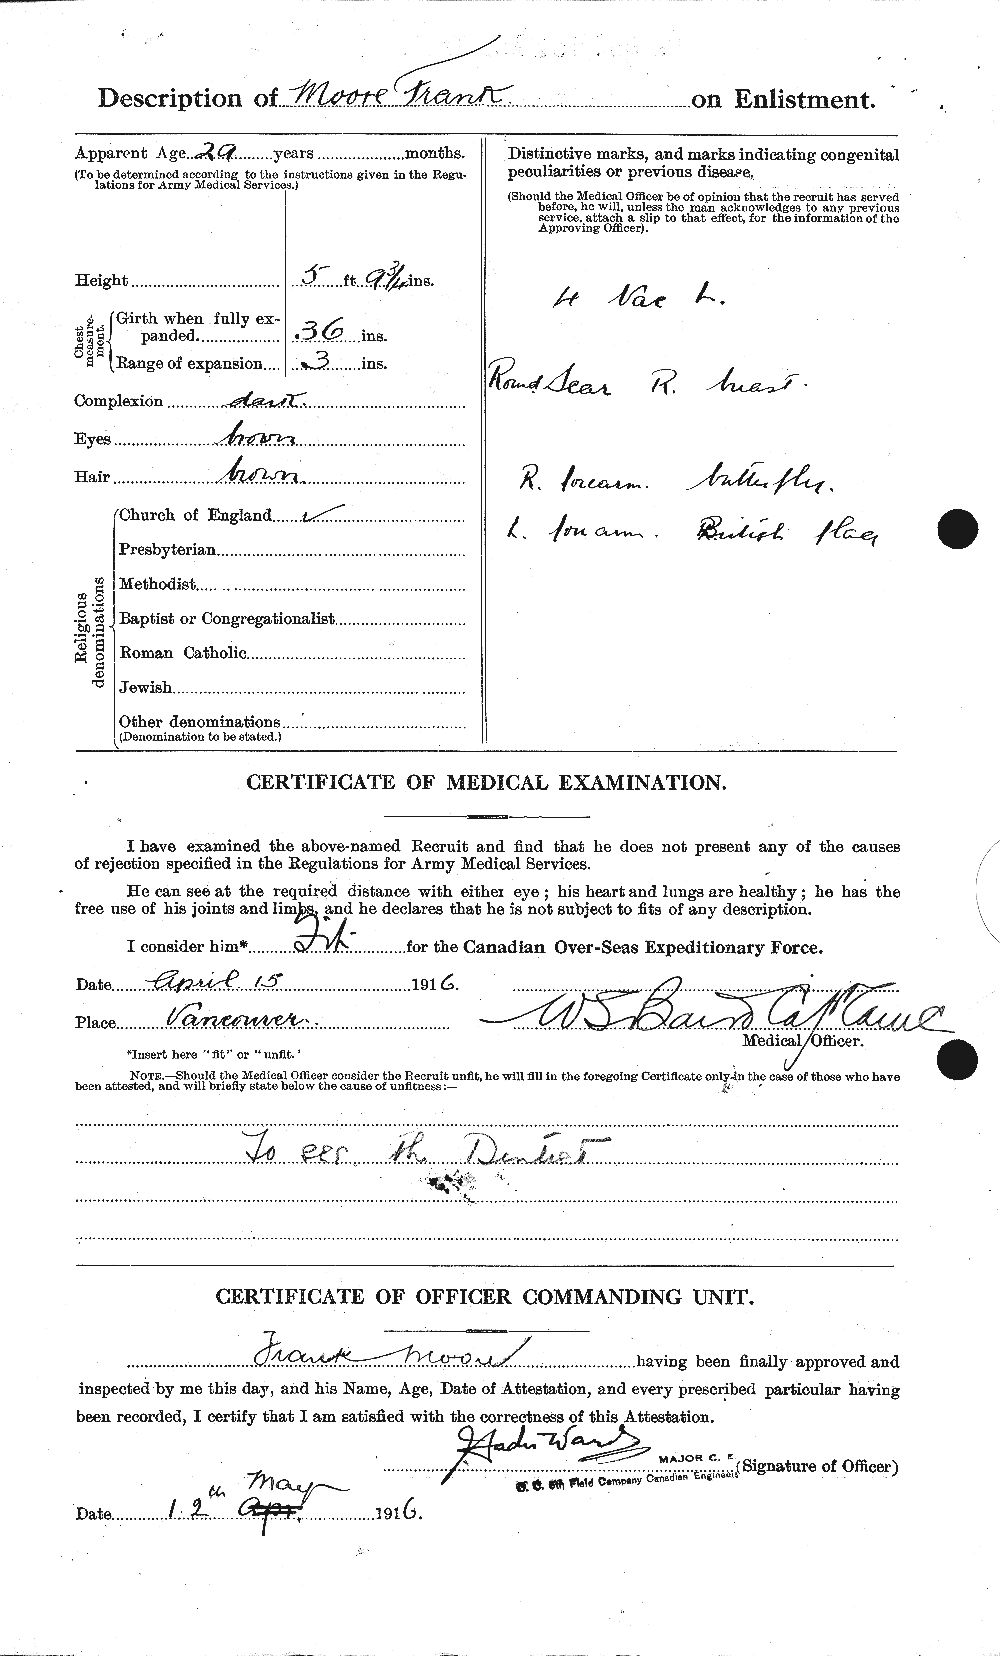 Dossiers du Personnel de la Première Guerre mondiale - CEC 506694b